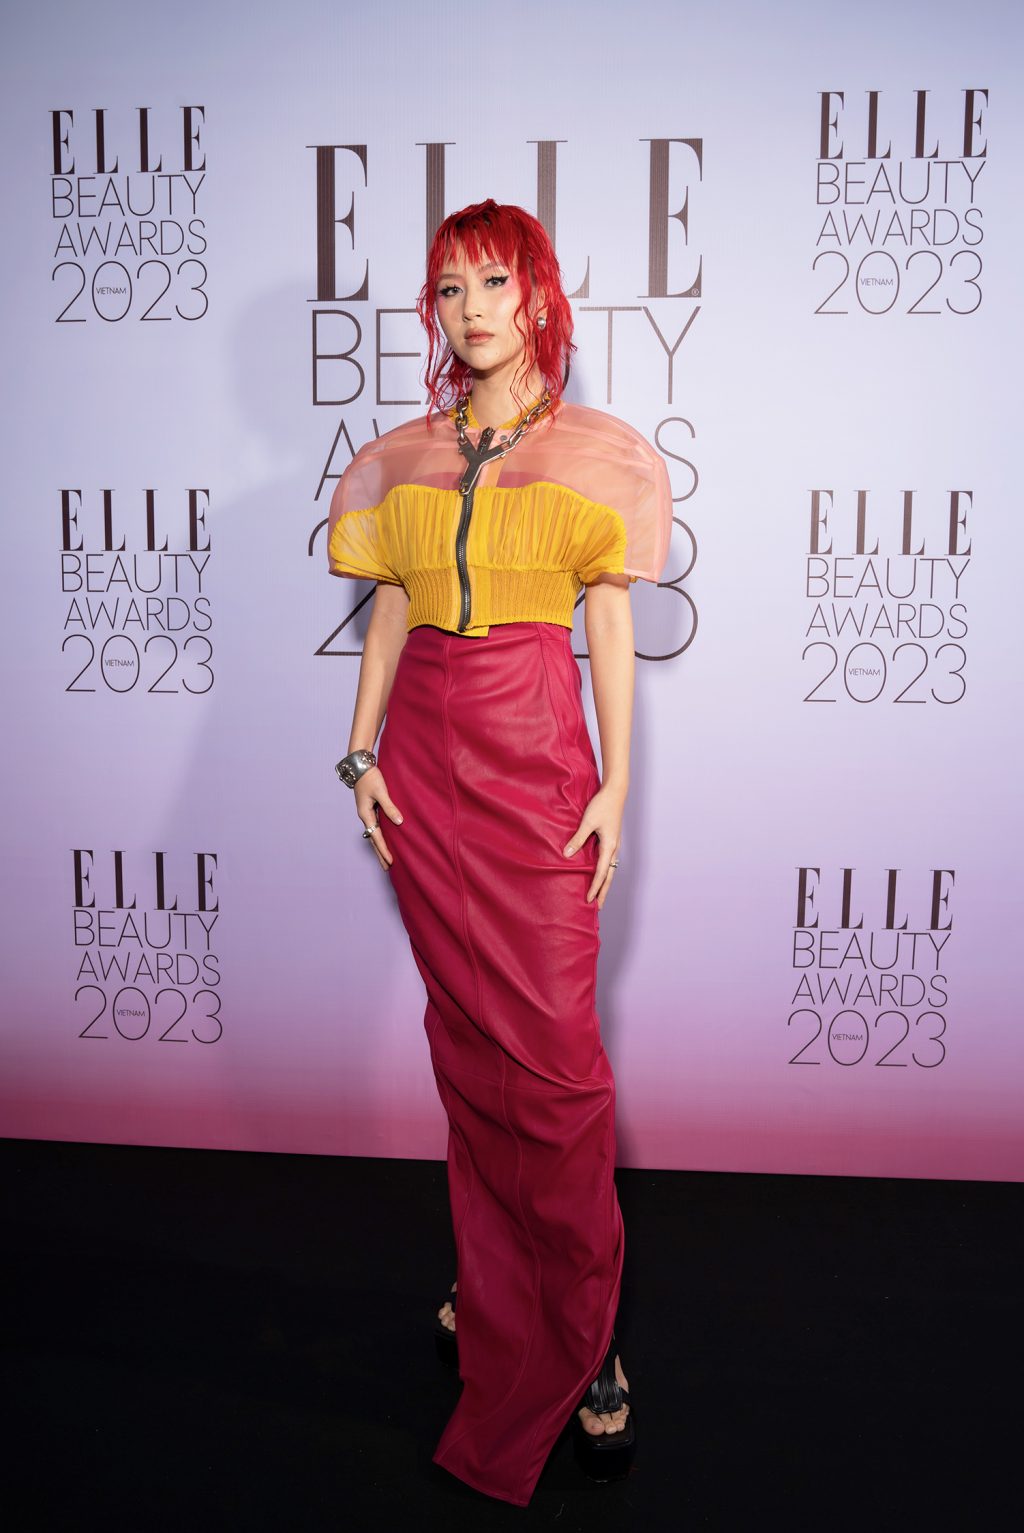 ELLE Beauty Awards 2023